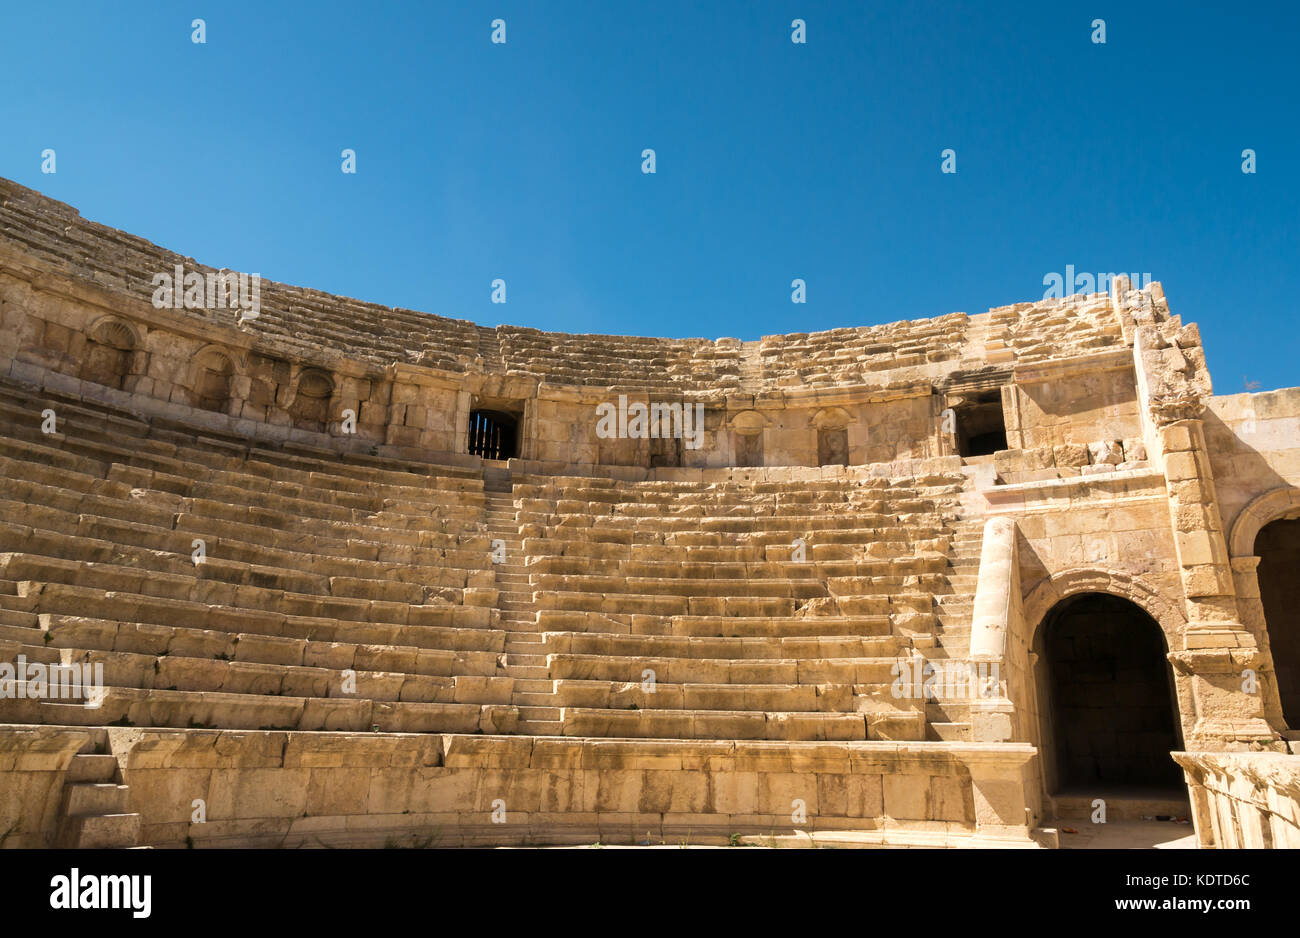 Posti a sedere e della procedura riportata di seguito nella parte nord di teatro e anfiteatro romano della città di Jerash, antica Gerasa, un sito archeologico, Giordania, Medio Oriente Foto Stock